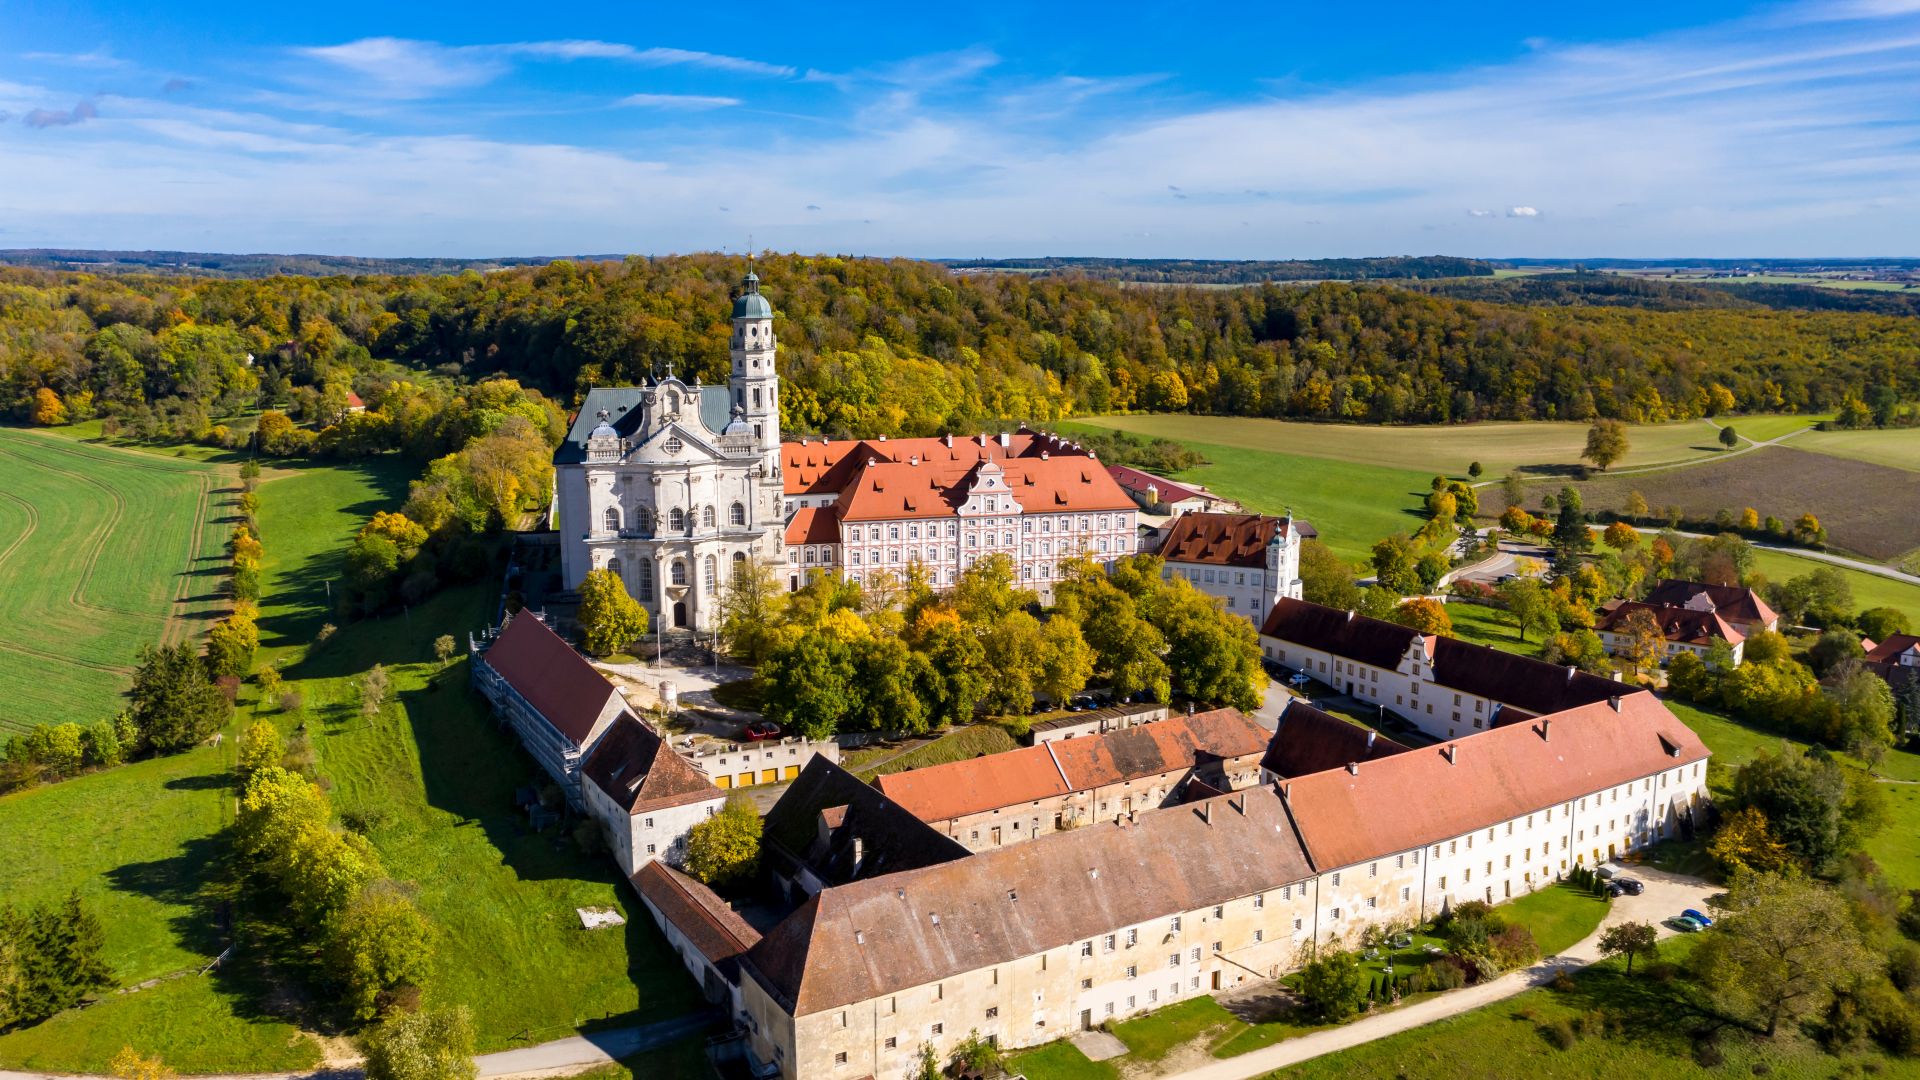 Neresheim: Aerial view of Neresheim Abbey Church